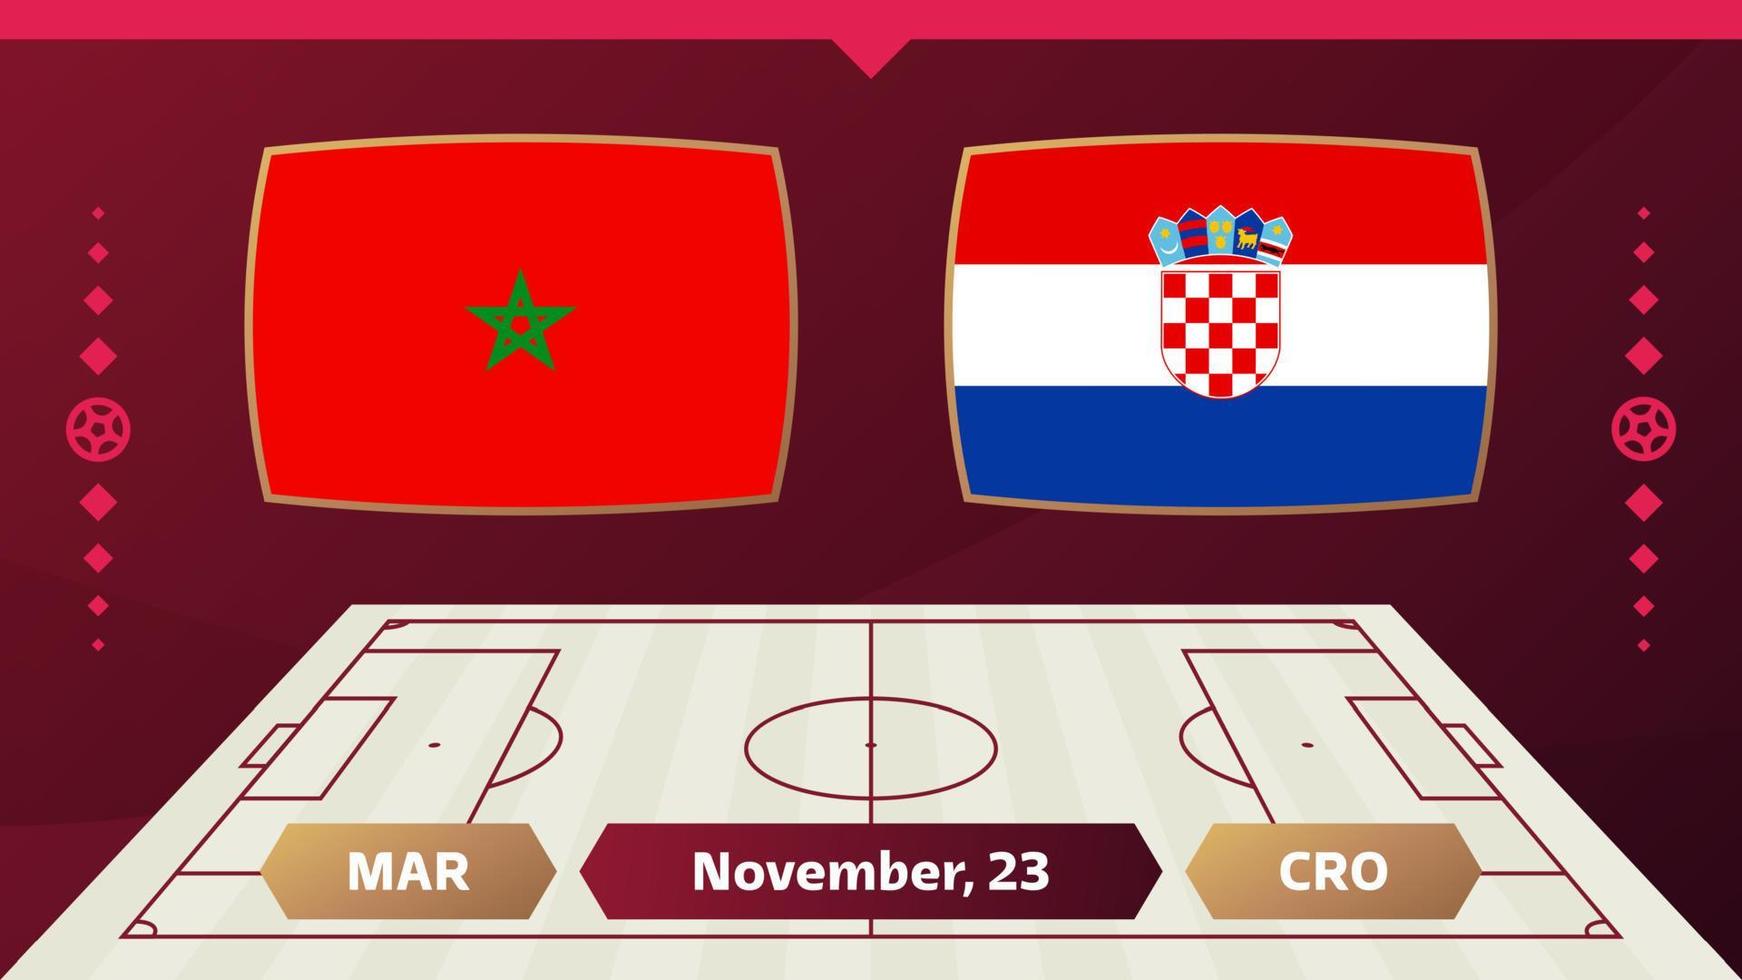 Marocko vs Kroatien, fotboll 2022, grupp f. världsfotbollstävling mästerskap match kontra lag intro sport bakgrund, mästerskap konkurrens sista affisch, vektorillustration. vektor